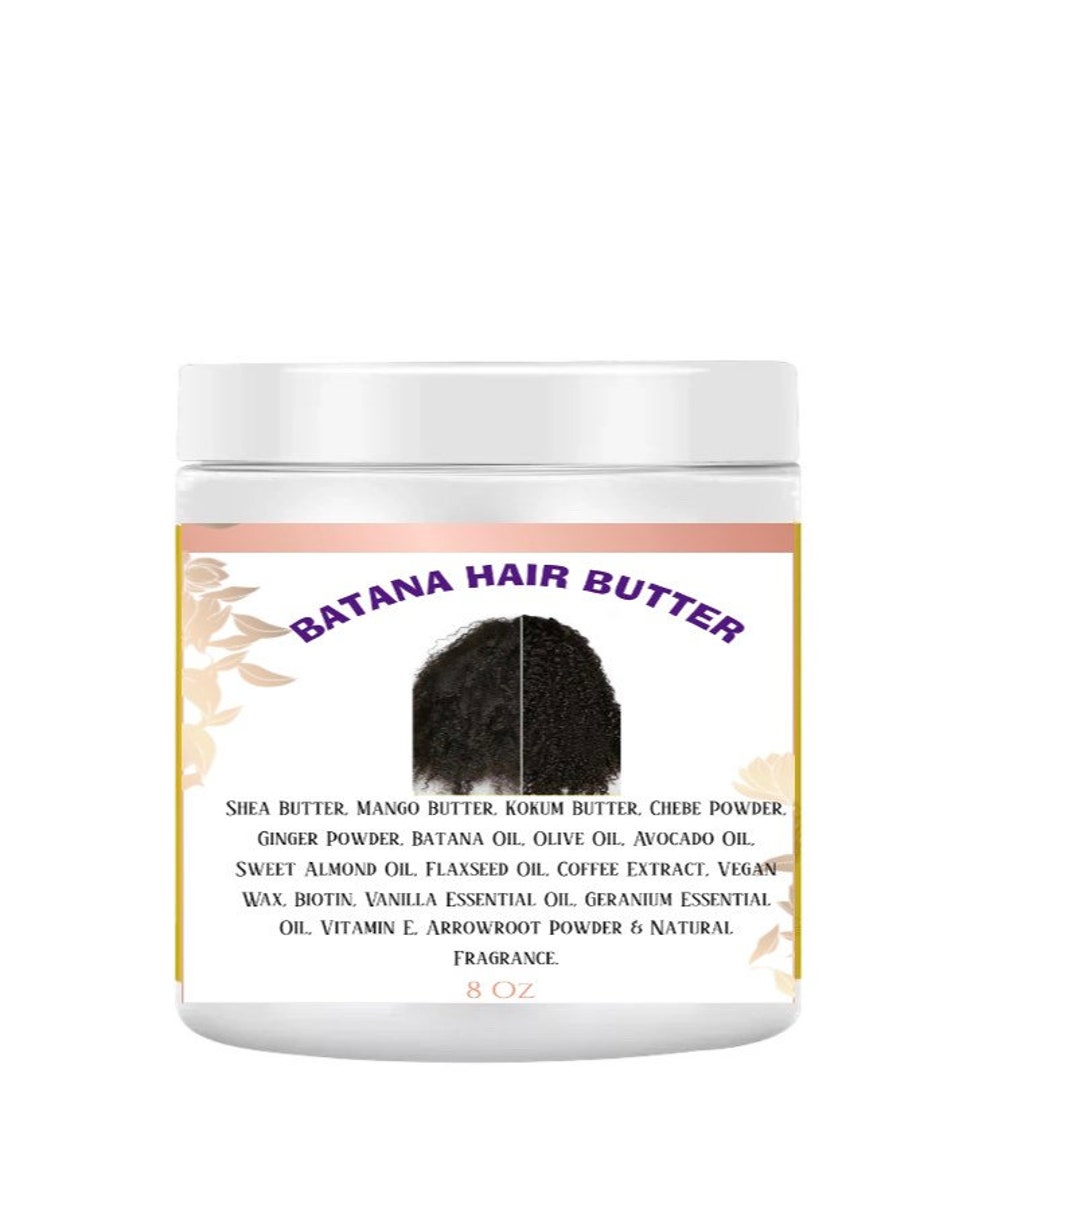 BATANA Hair Growth Butter Moisturizing Hair Cream - Etsy